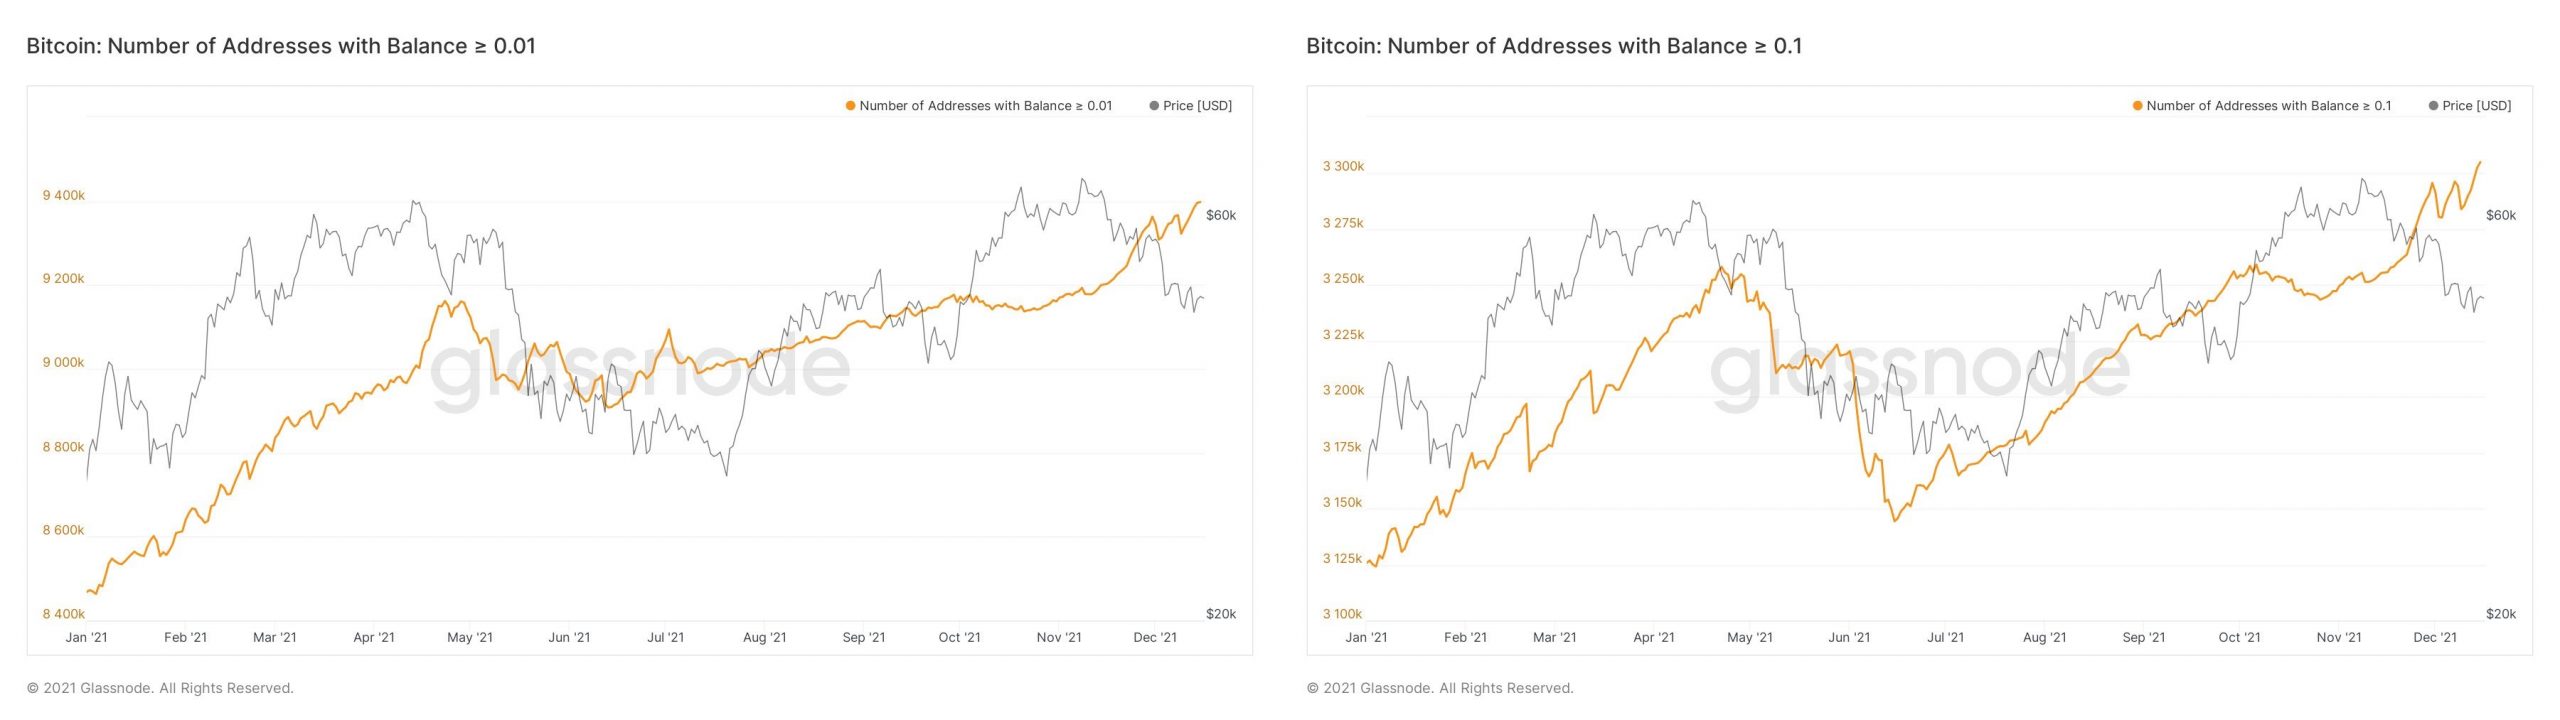 Dữ liệu cho thấy các nhà đầu tư bán lẻ đang mua và cá voi đang bán, sẽ ảnh hưởng thế nào đến giá Bitcoin ?